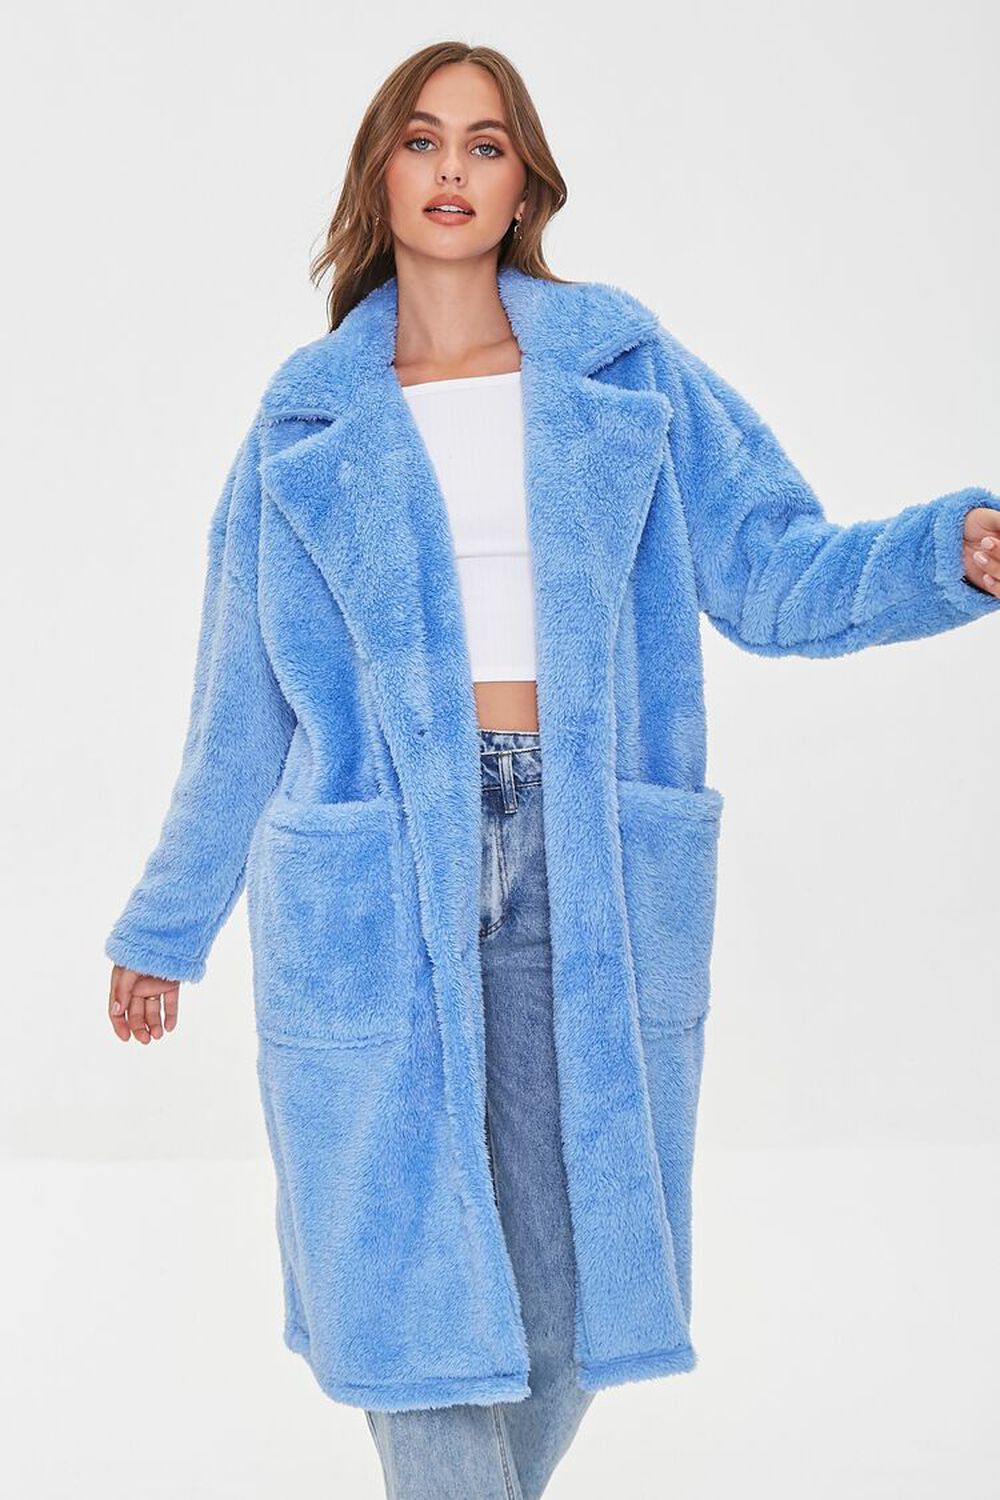 BLUE Faux Fur Teddy Coat, image 1